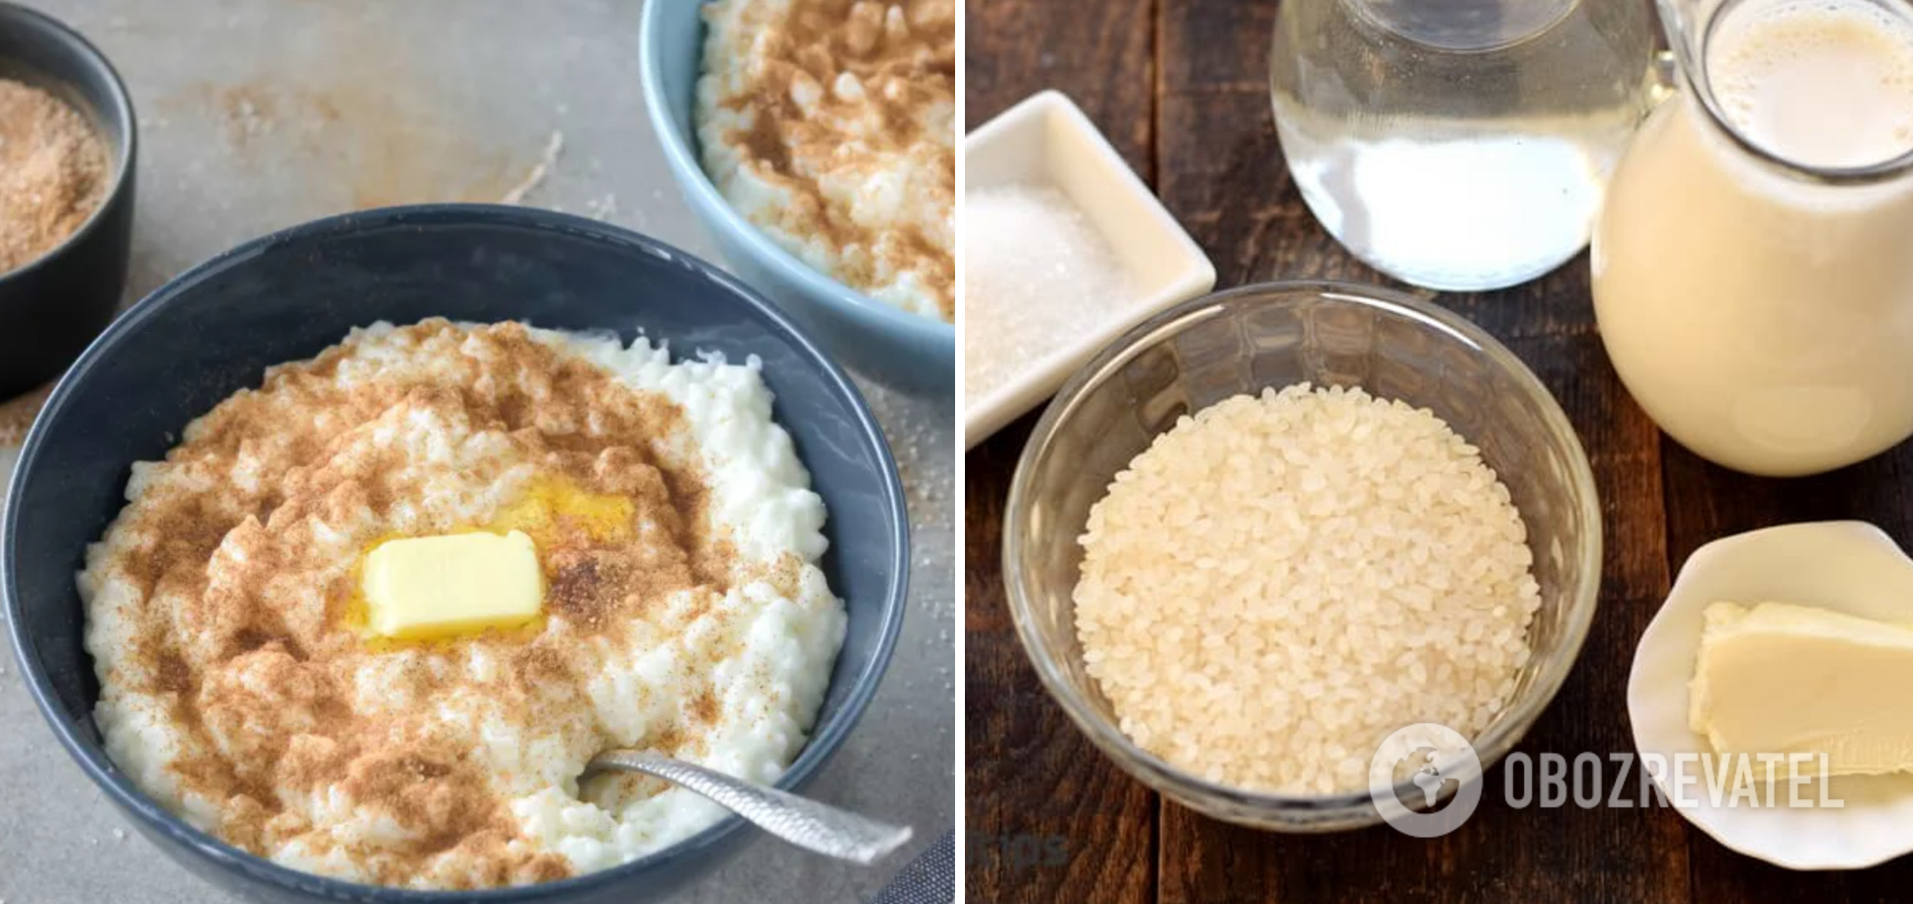 Rice porridge for breakfast